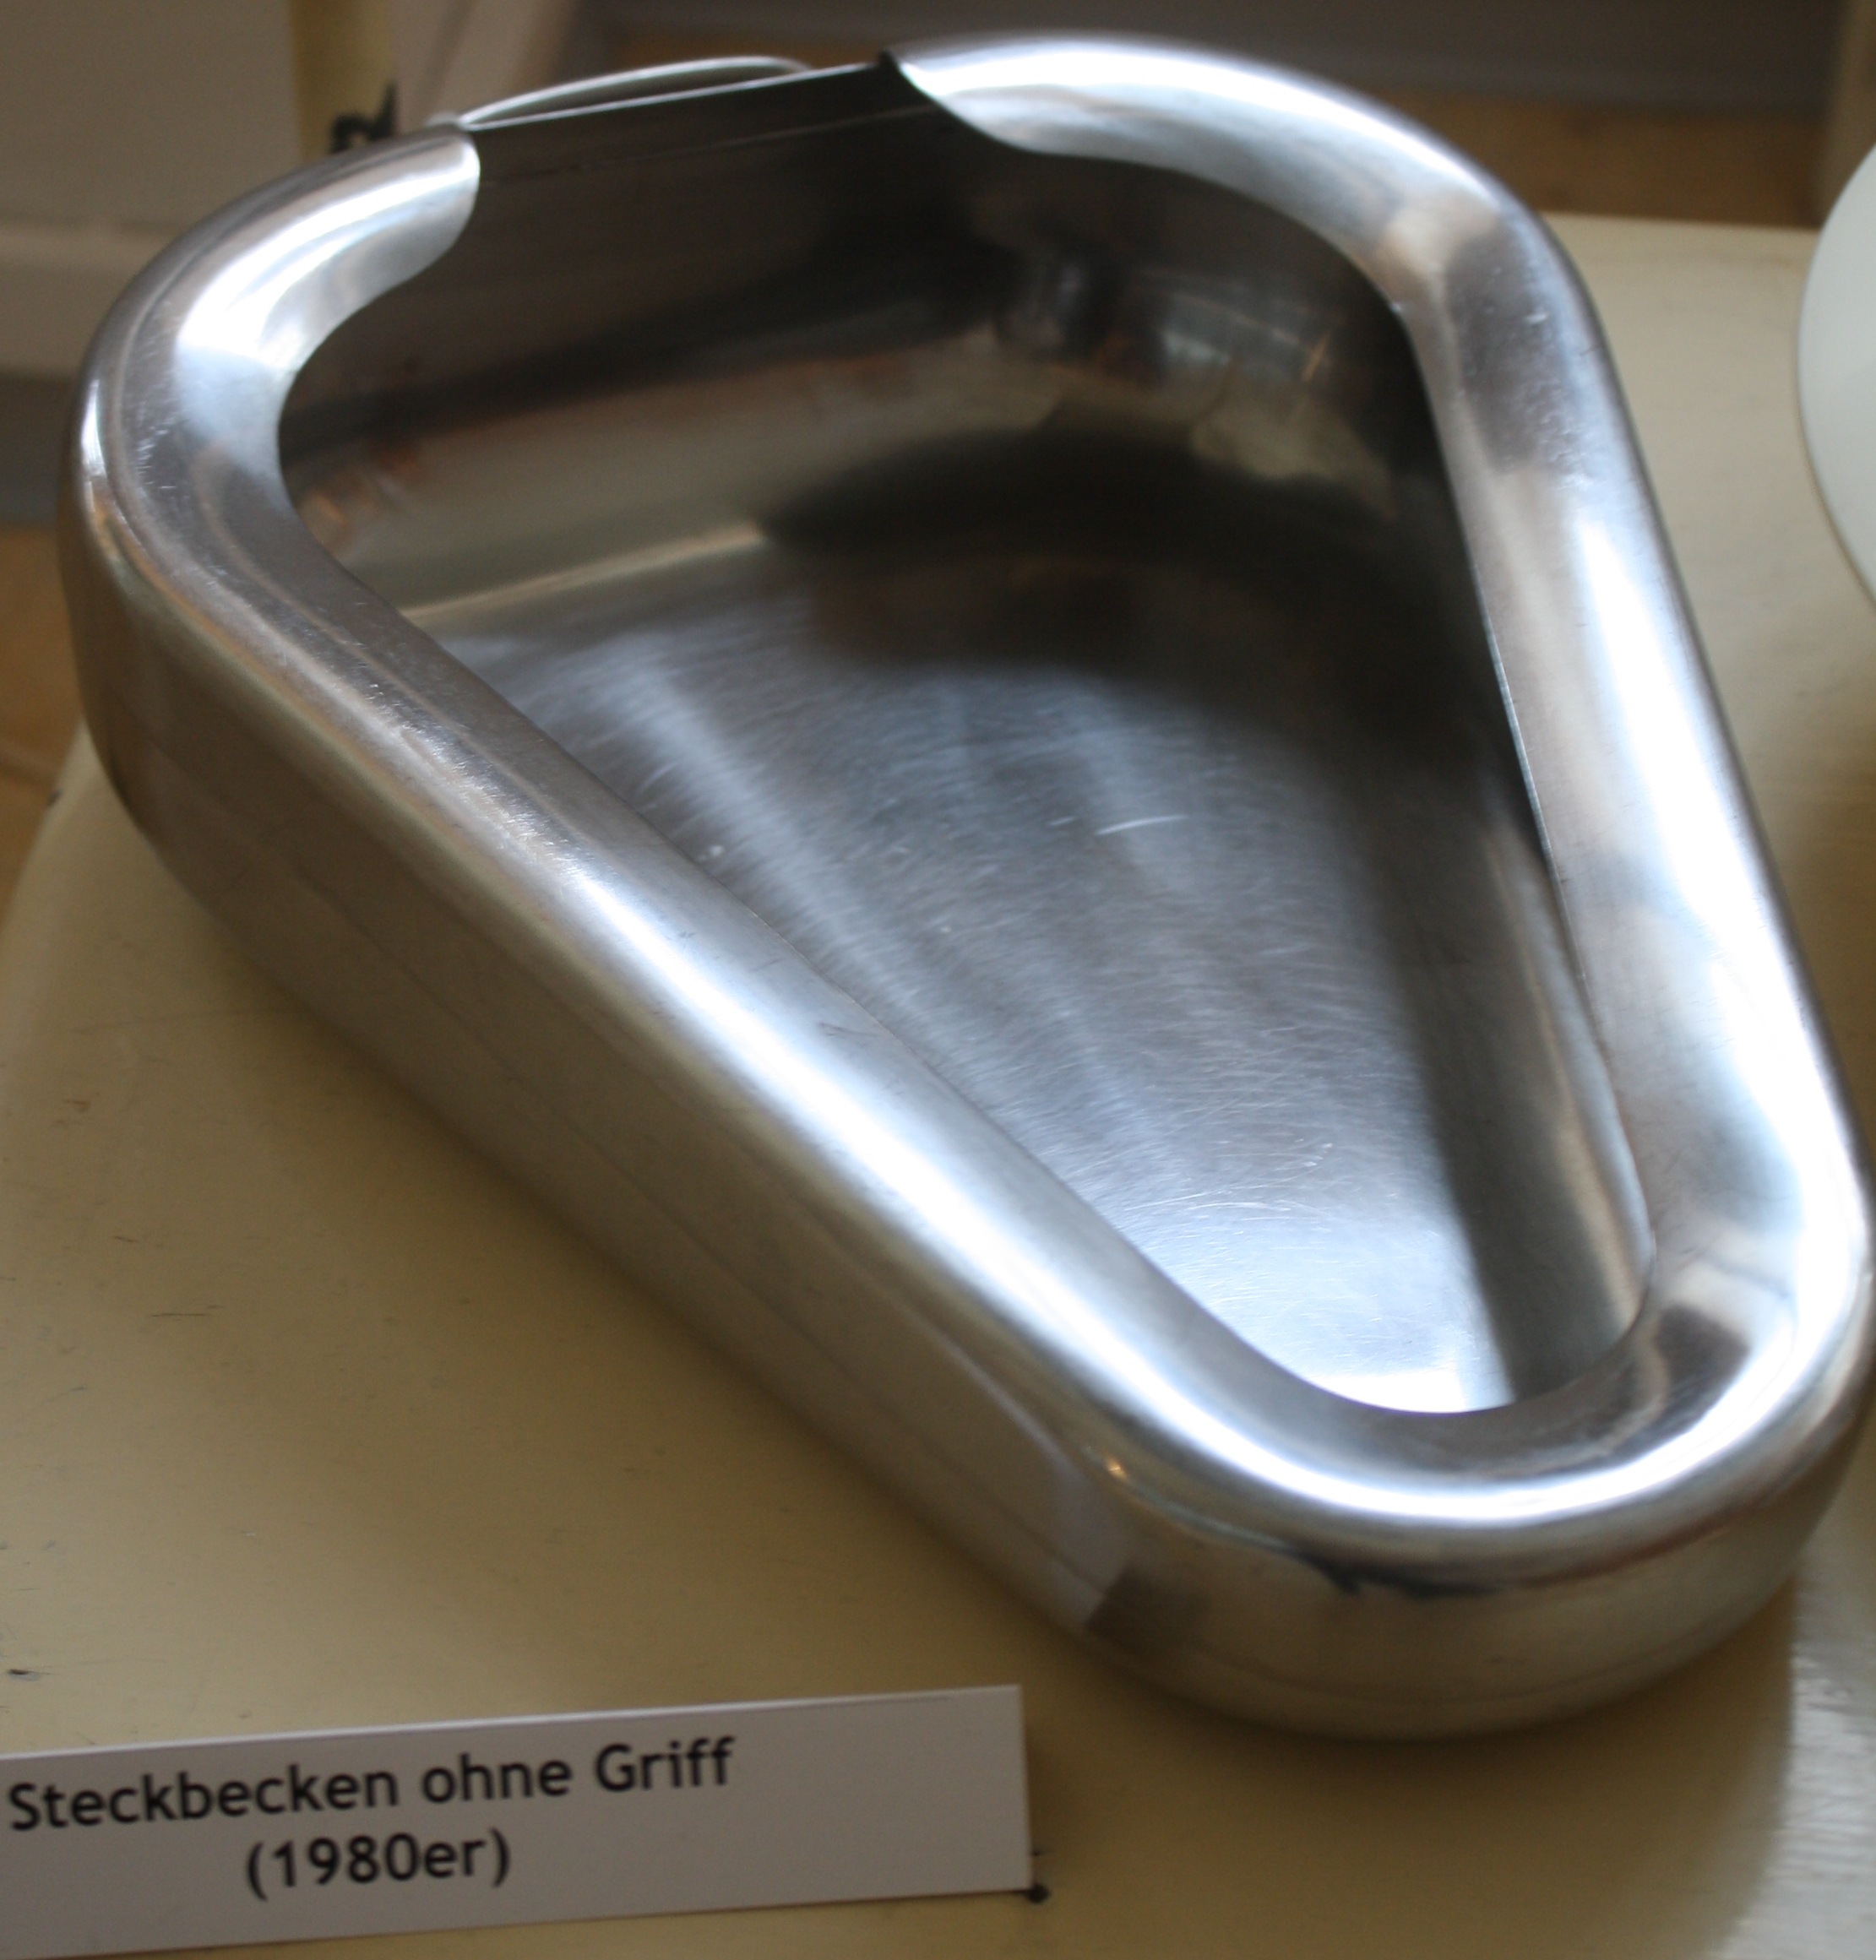 Steckbecken ohne Griff (Krankenhausmuseum Bielefeld CC BY-NC-SA)